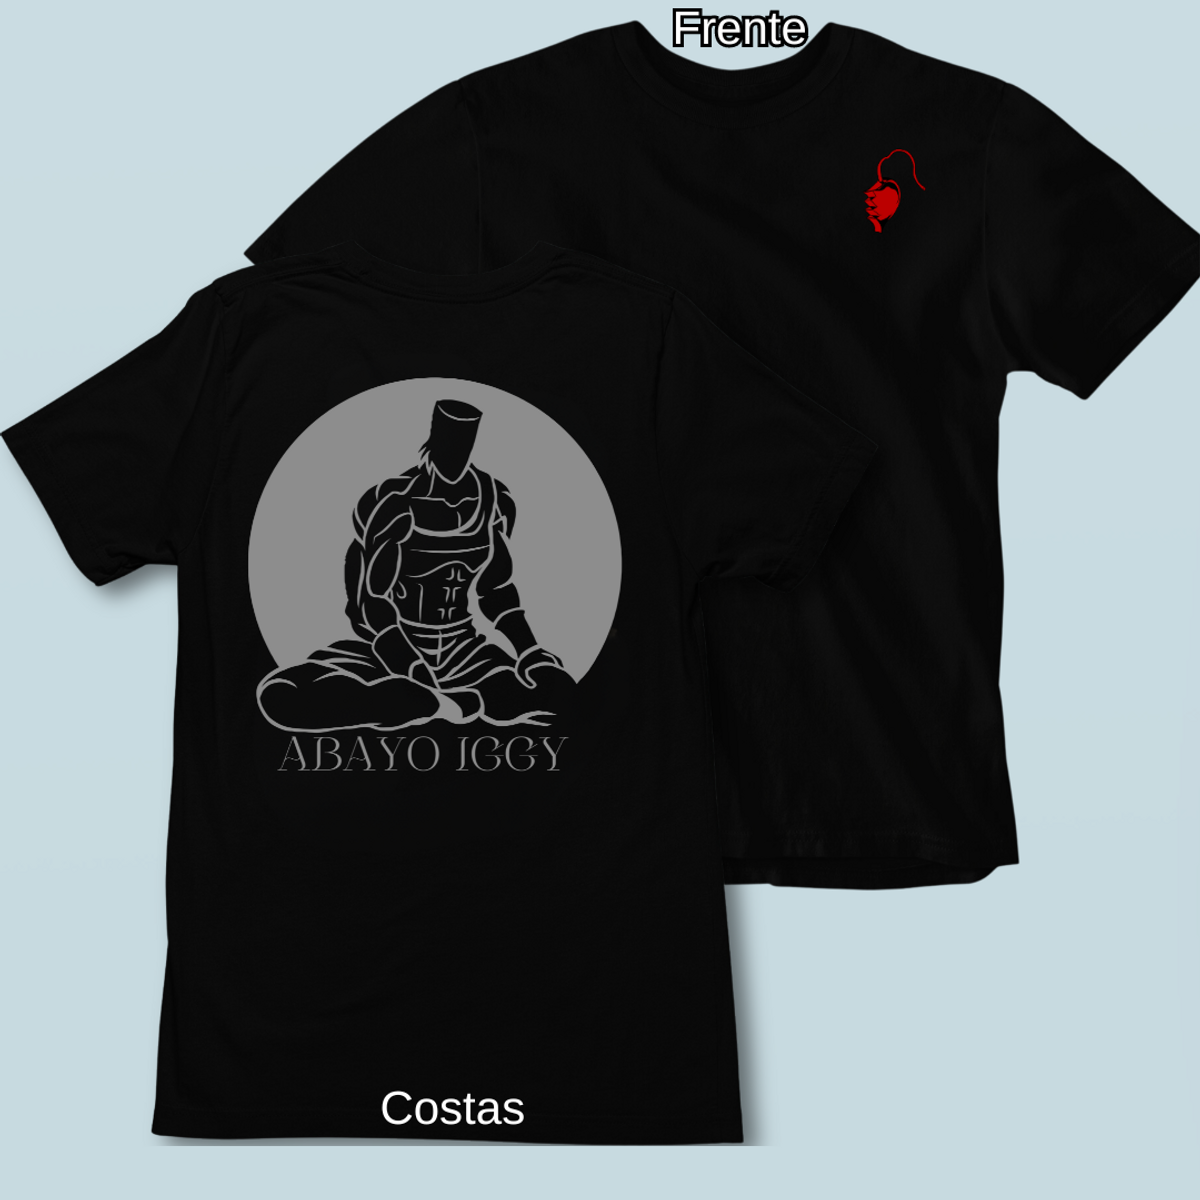 Nome do produto: Camiseta Abayo Iggy Frente Costas